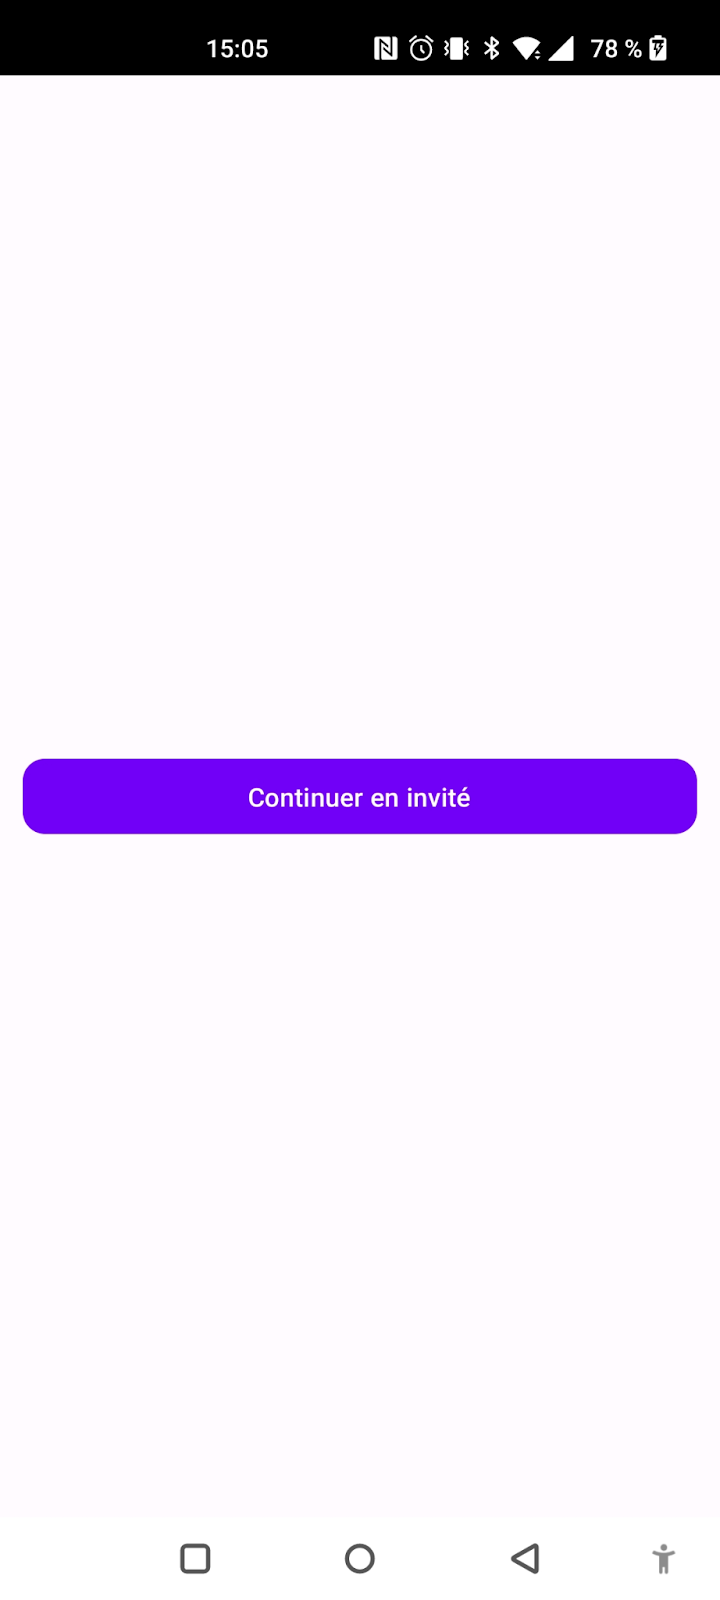 Ecran de l'application avec le bouton "Continuer en invité"